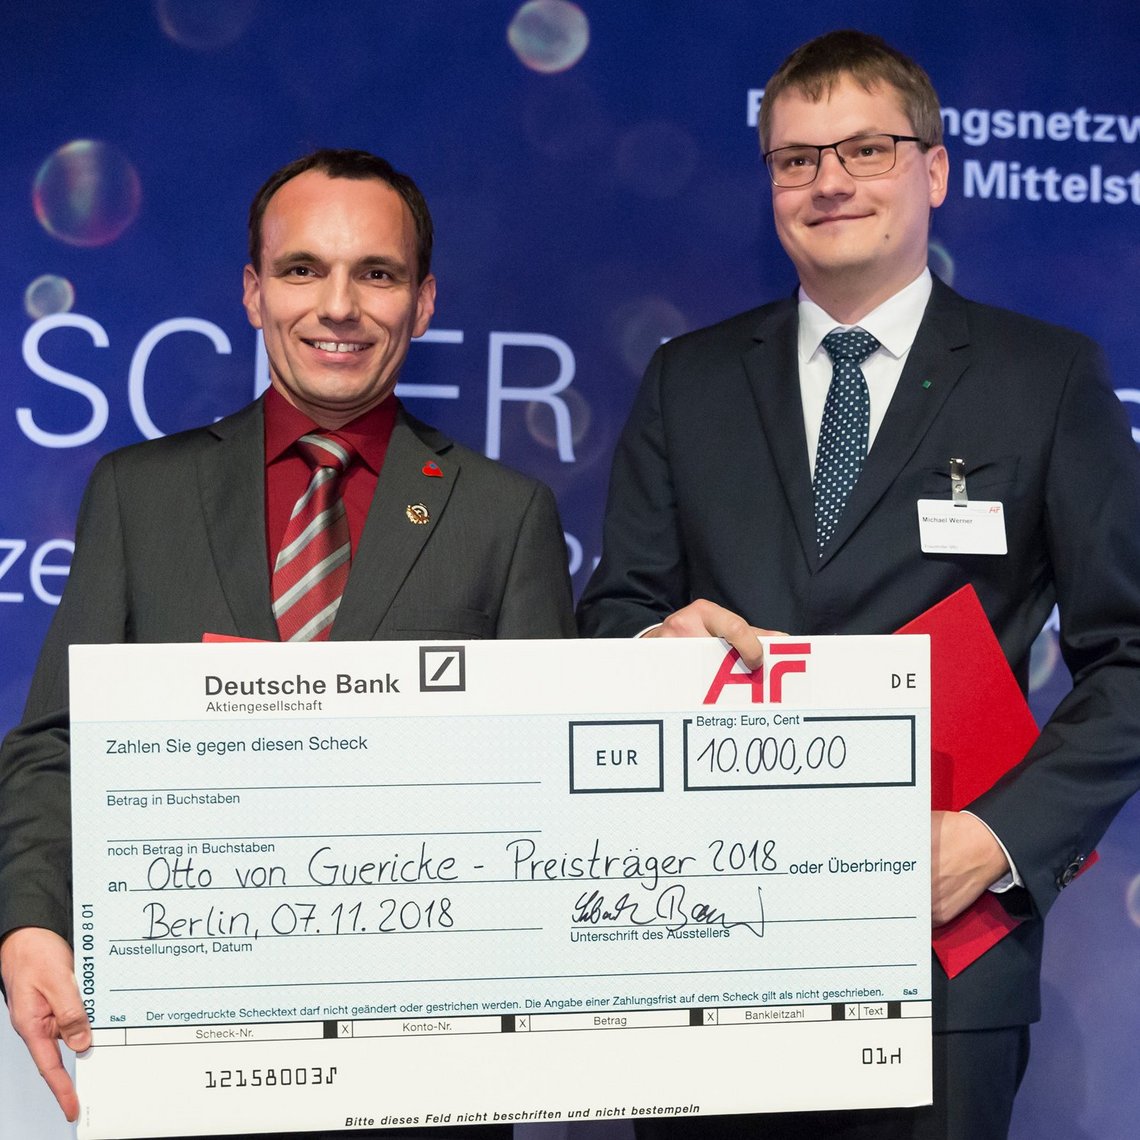 Das Bild zeigt die Otto von Guericke-Preisträger 2018: Dr. Grzegorz Śliwiński und Michael Werner